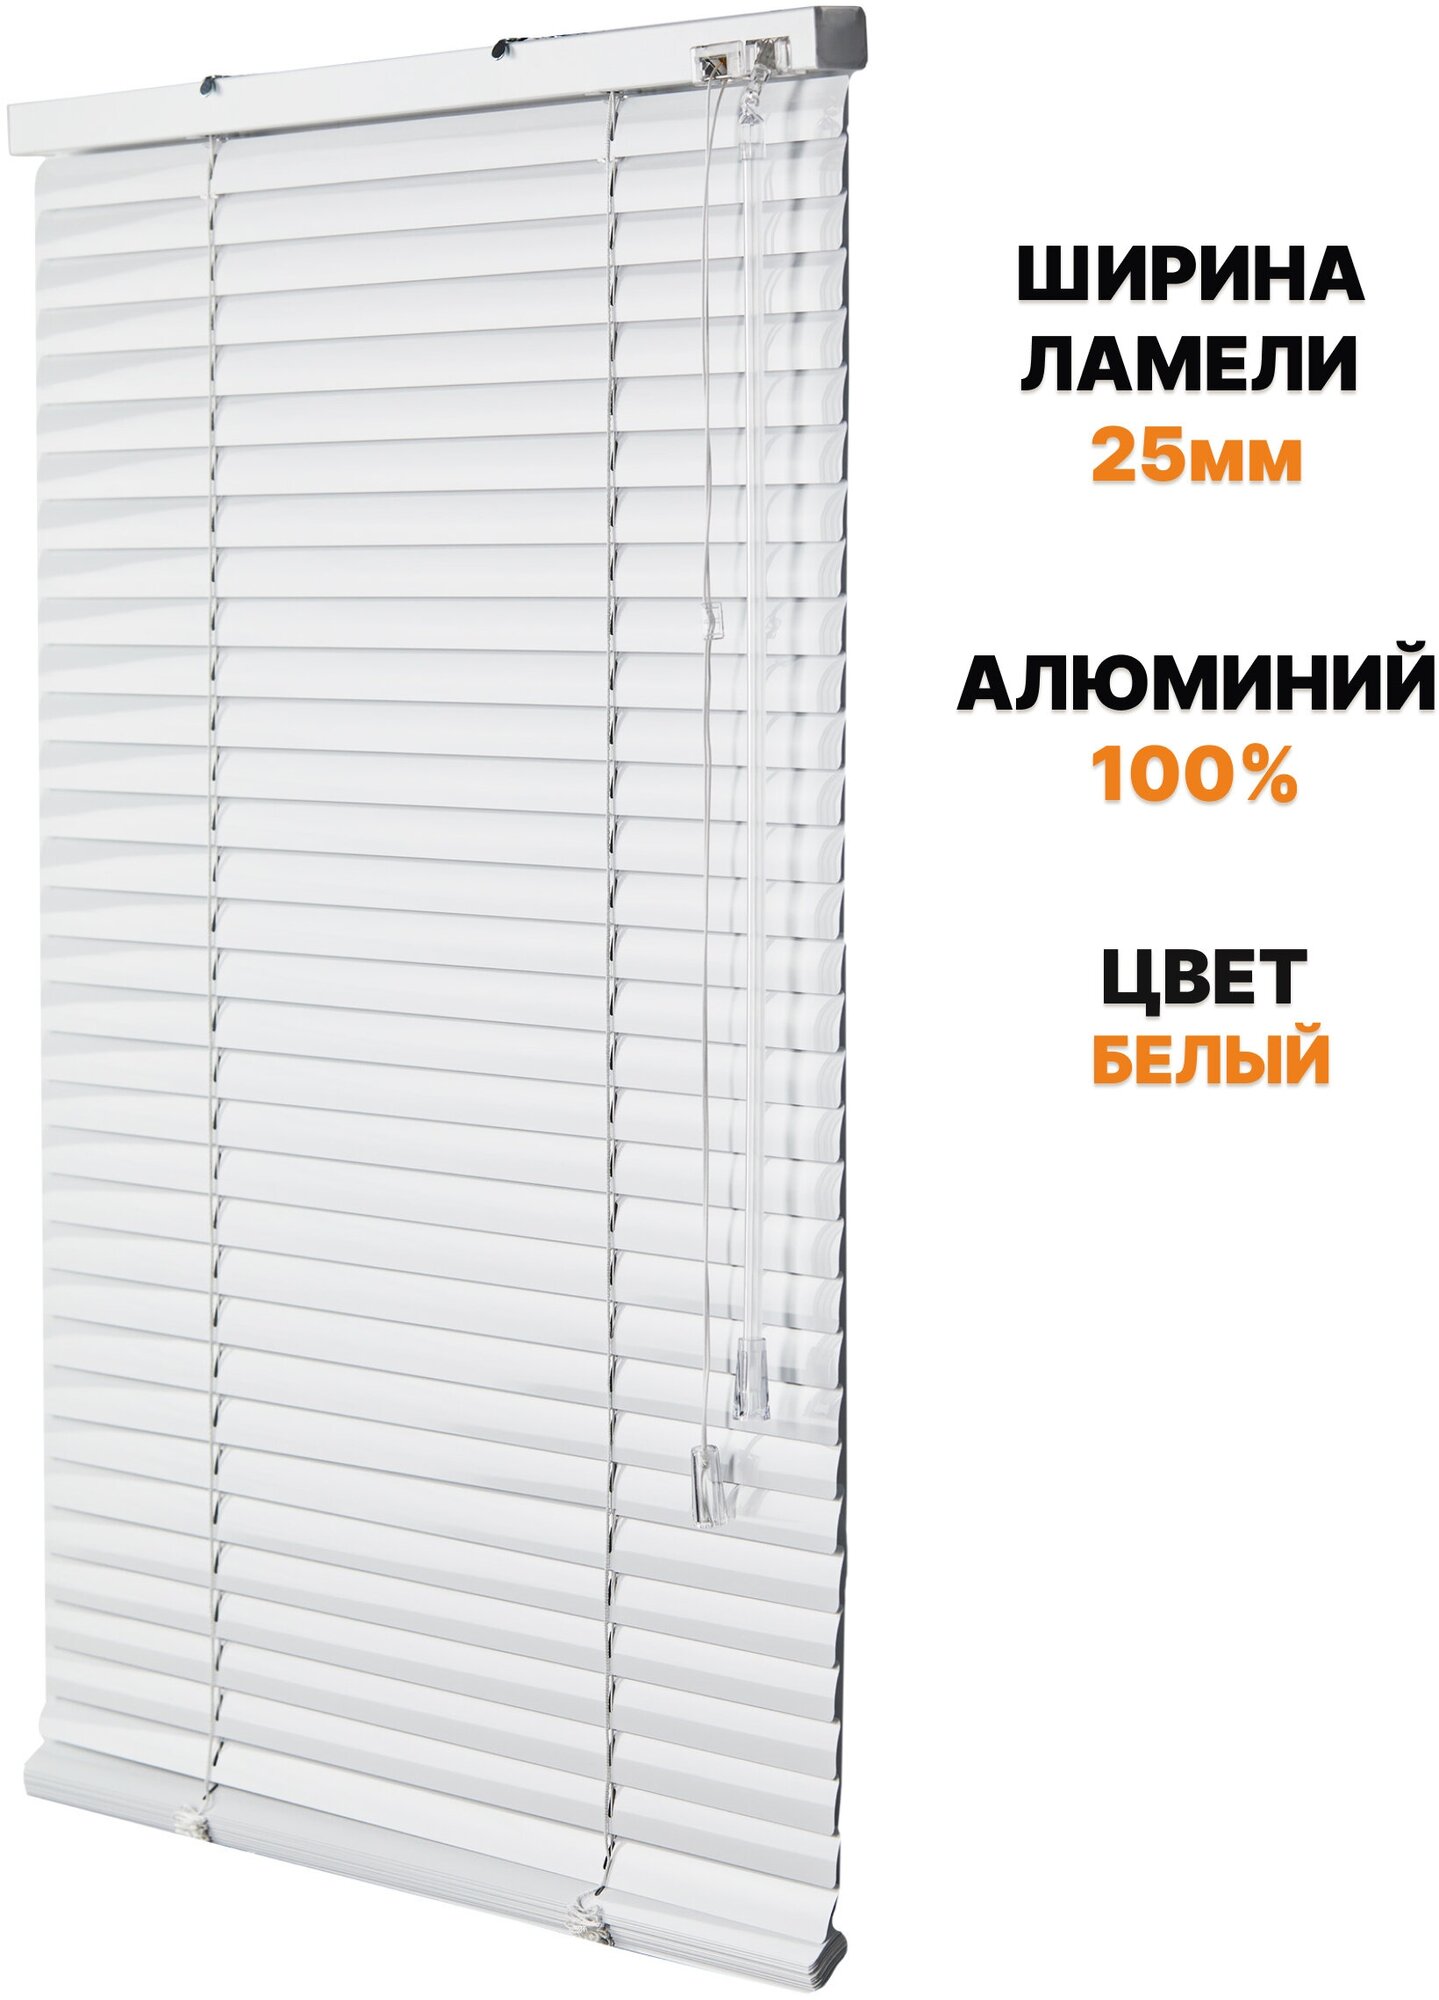 Жалюзи горизонтальные алюминиевые на пластиковое окно, балкон, кухню, 65х140 см